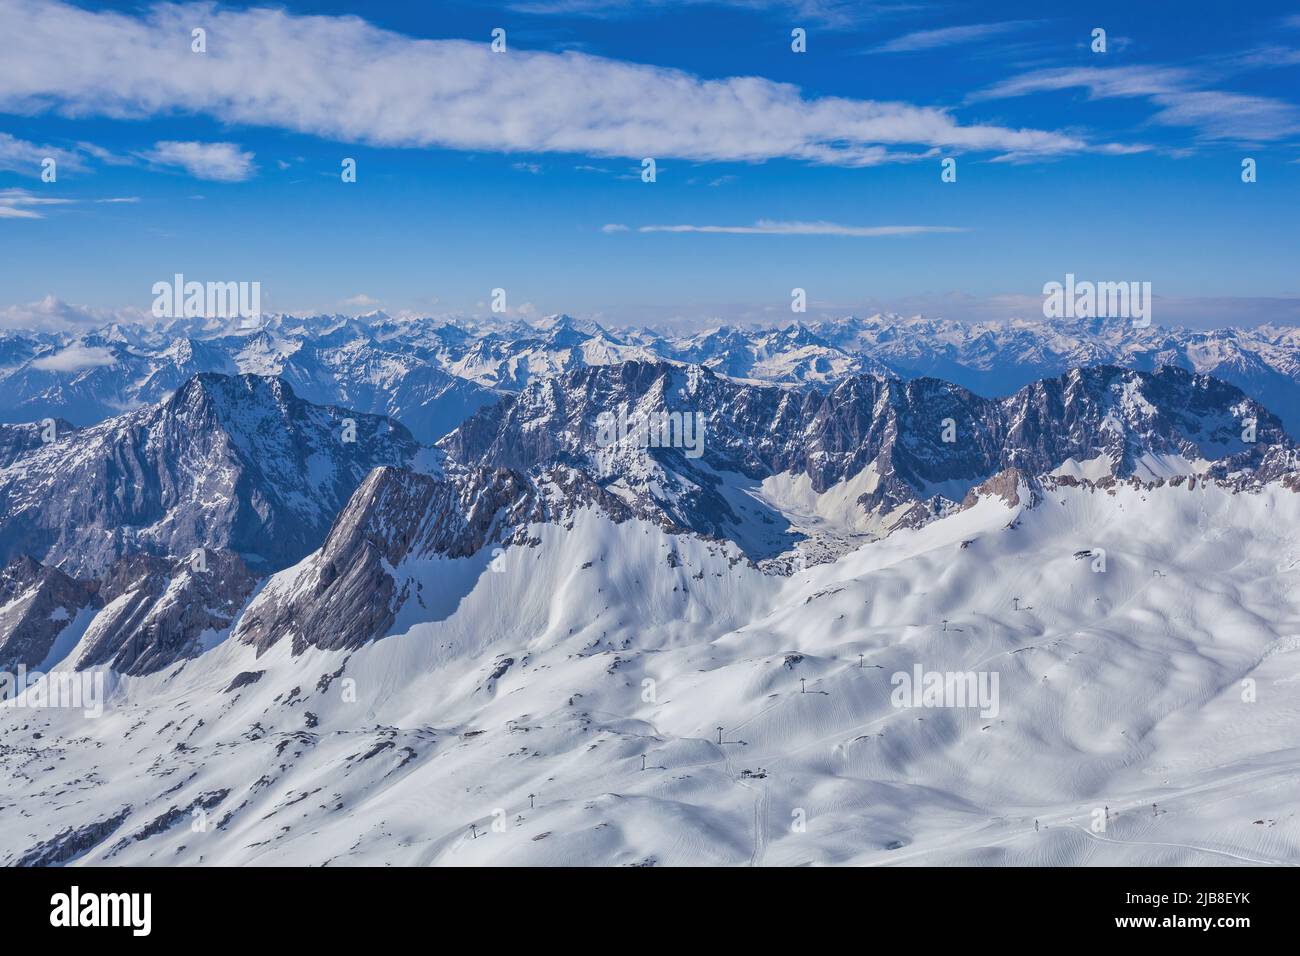 Garmisch Partenkirchen Allemagne, le pic de Zugspitze et les Alpes chaîne de montagne avec neige en hiver Banque D'Images